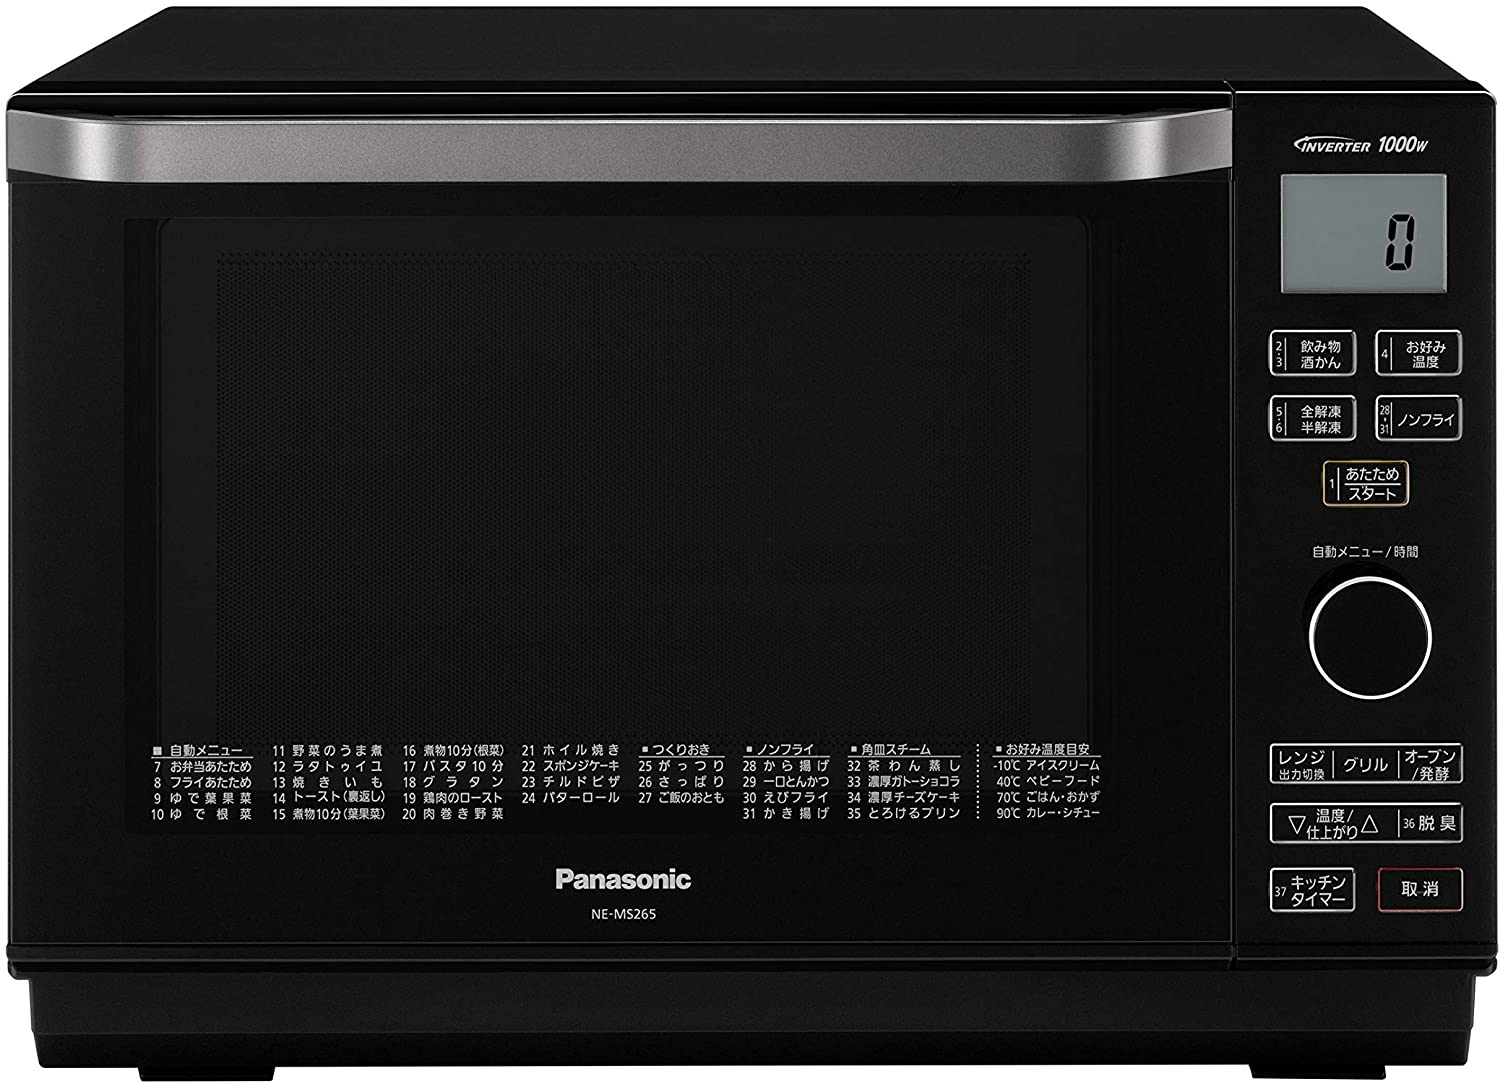 「パナソニック（Panasonic）」は容量12〜23L程度のコンパクトモデルが豊富